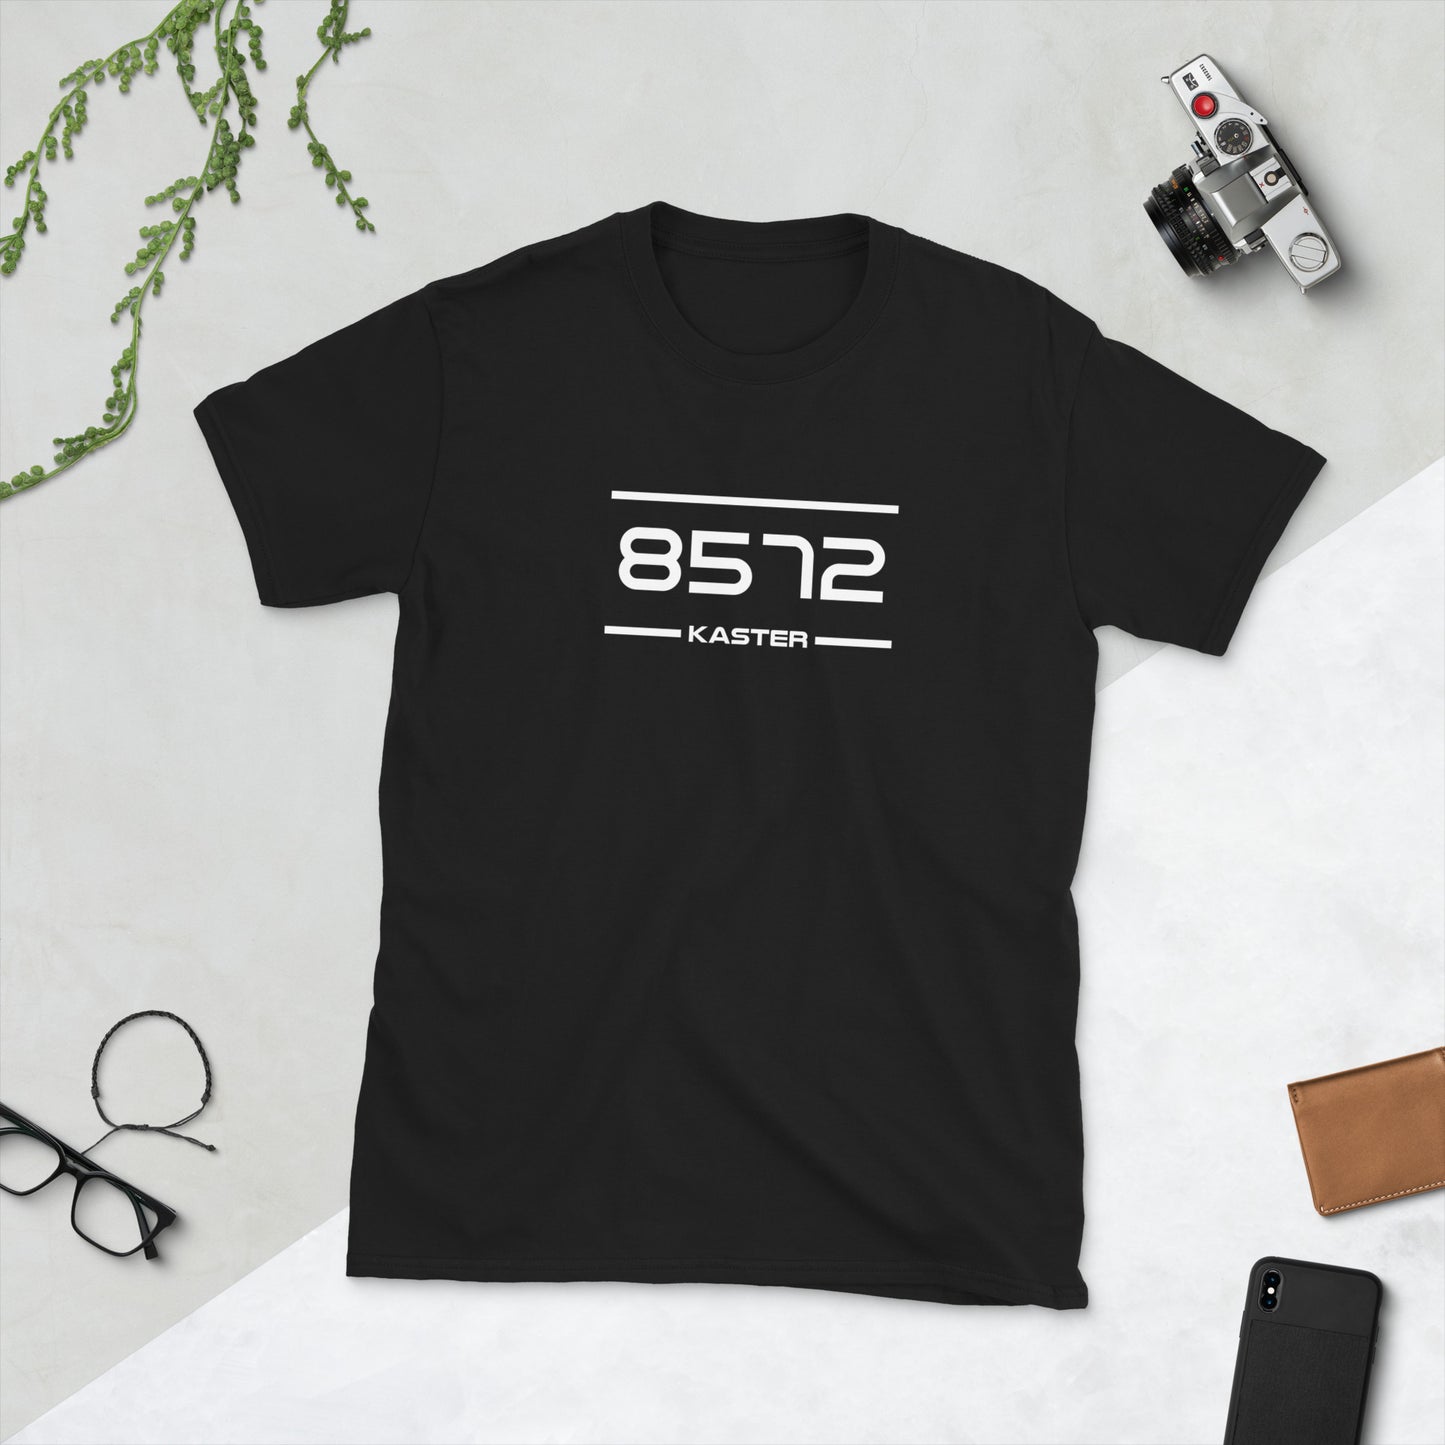 Tshirt - 8572 - Kaster